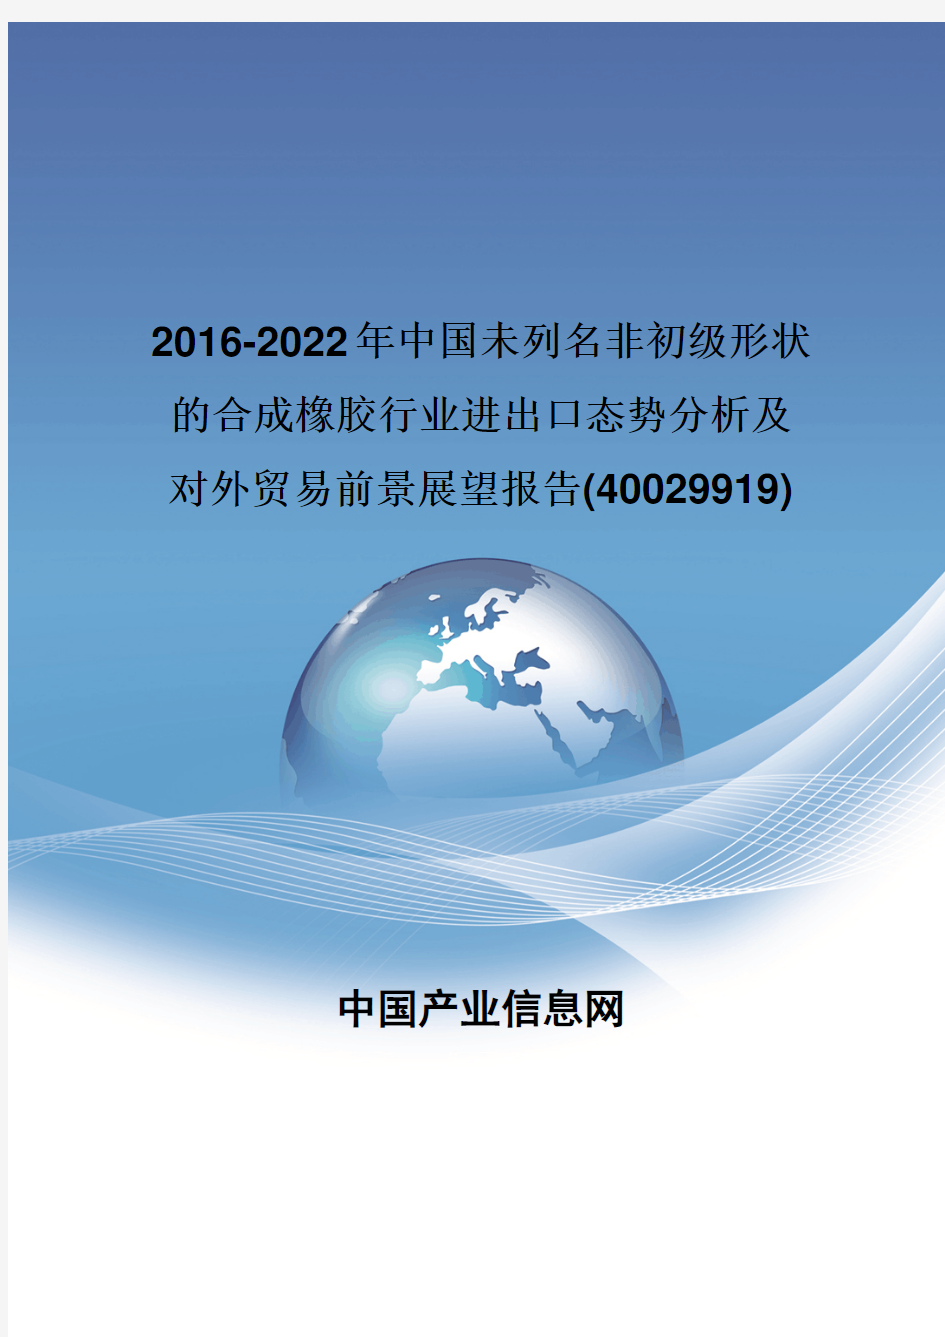 2016-2022年中国未列名非初级形状的合成橡胶行业进出口态势分析报告(40029919)